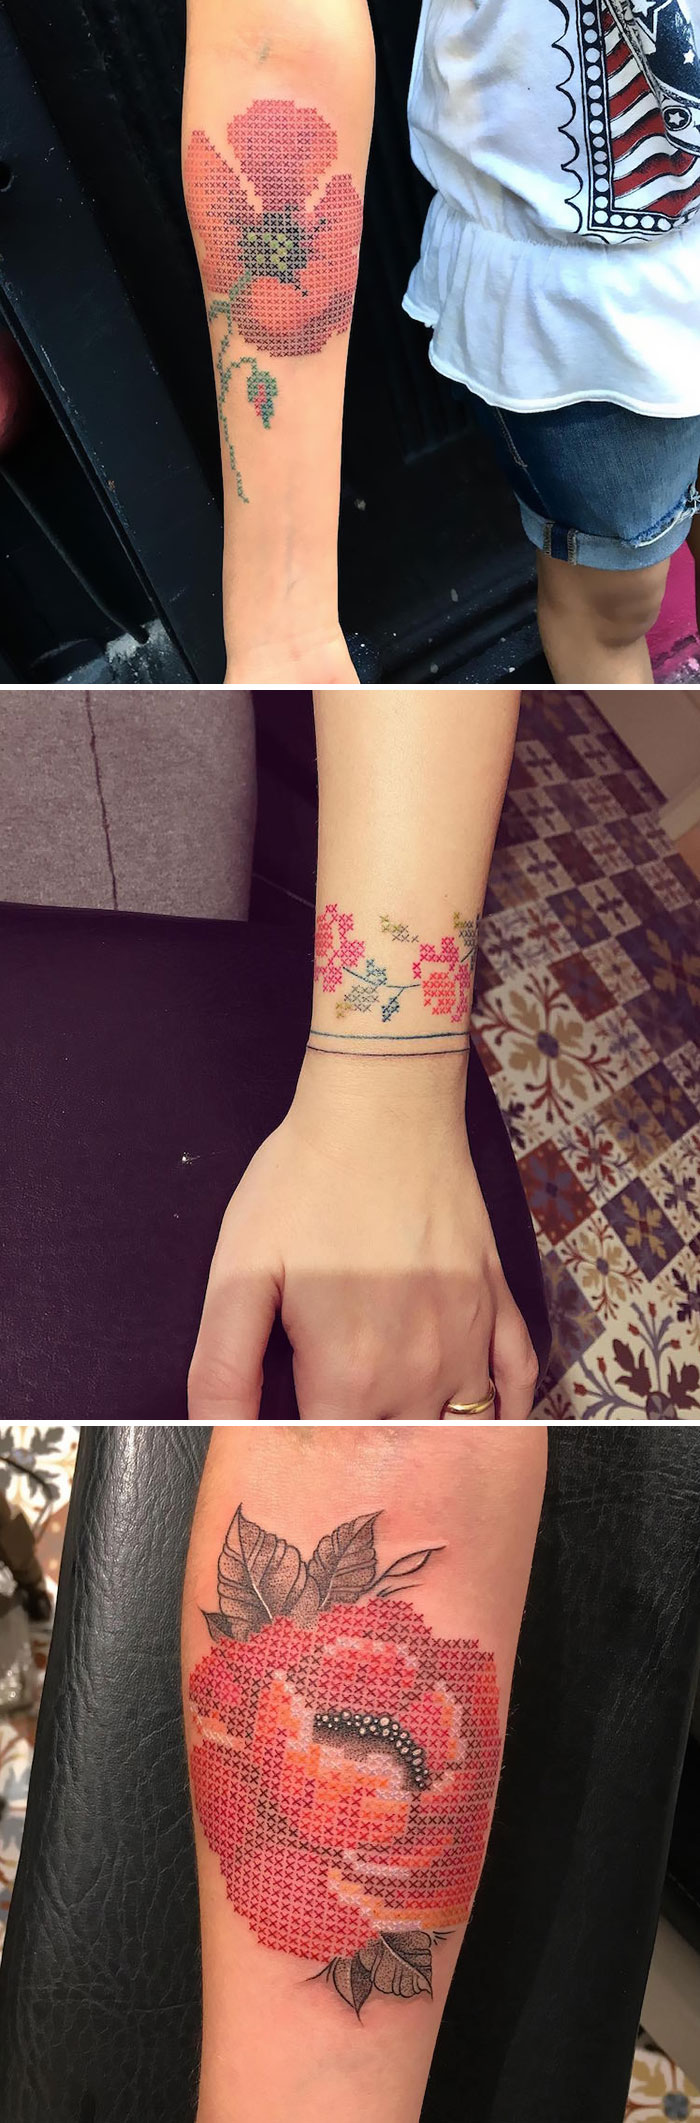 Álomszép virágos tetoválások, amik a bőrödön nyíladoznak